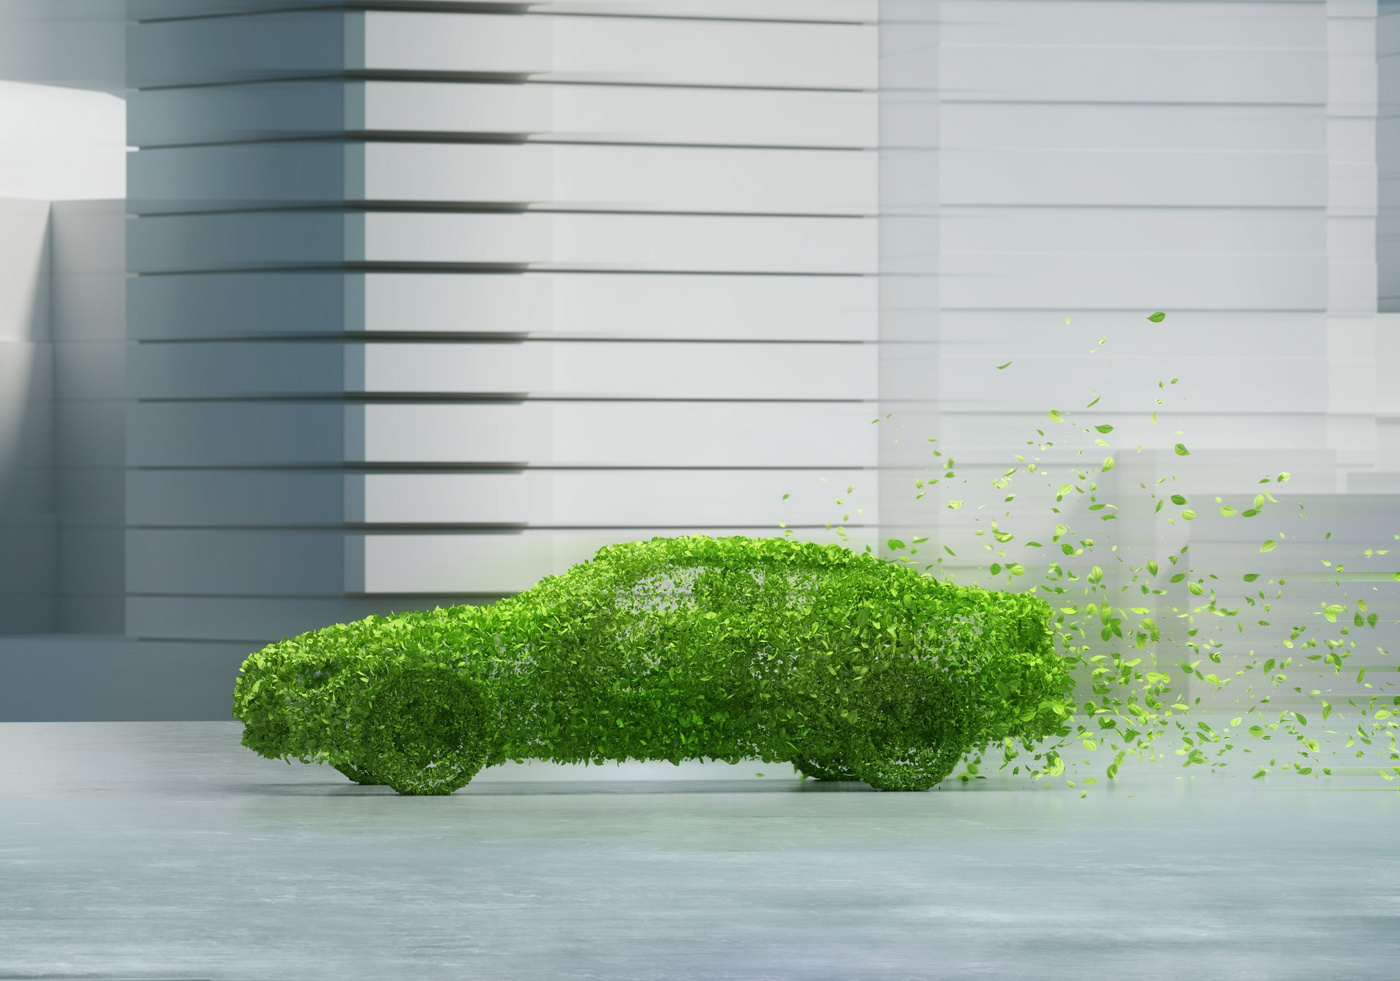 Das Bild zeigt ein Auto, das mit grünen Blättern bedeckt ist und sich langsam auflöst